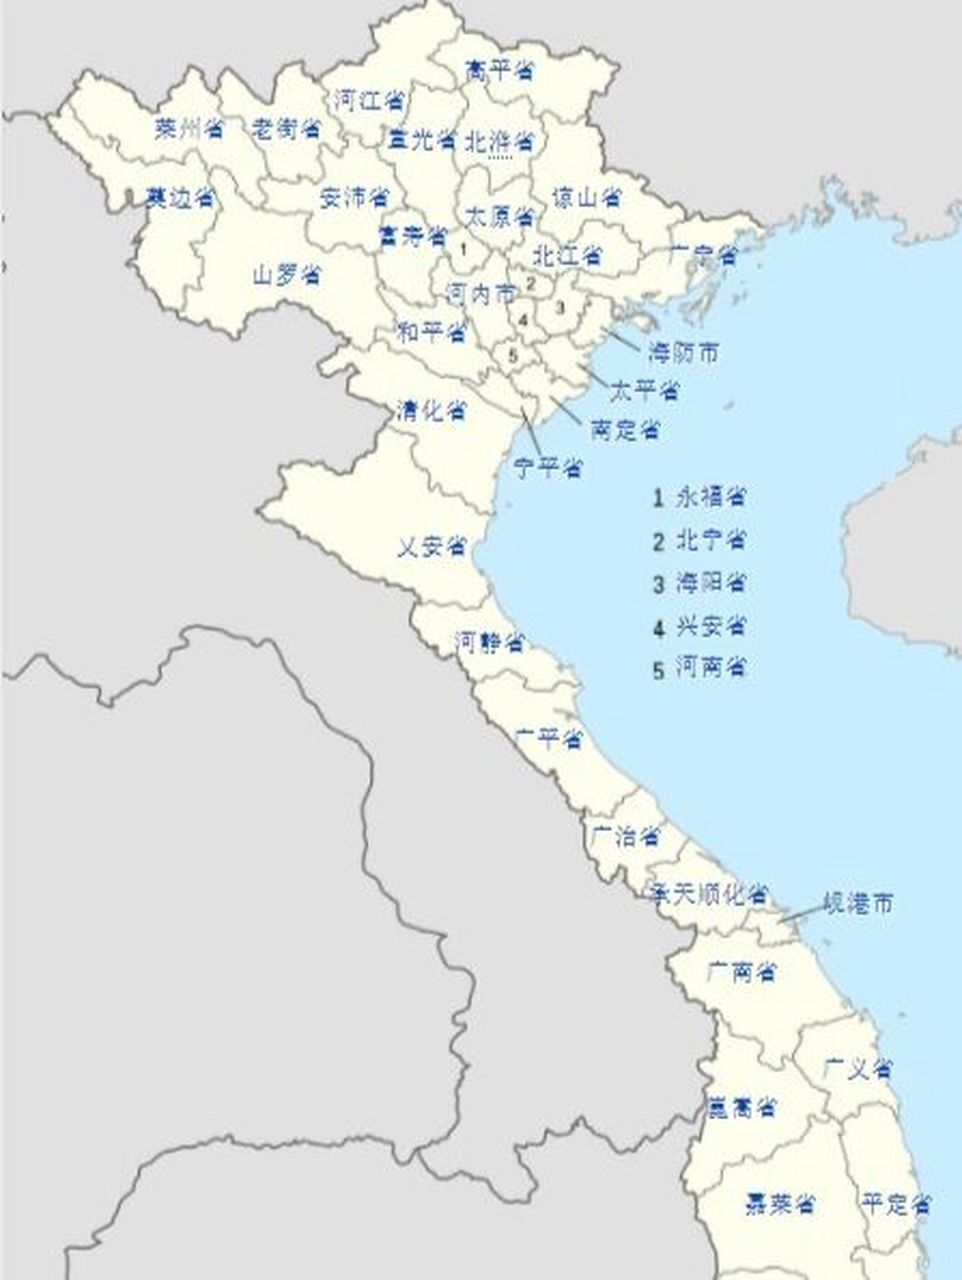 越南有好多中国地名:河南,太原,西宁…… 北江:省名,省会同名